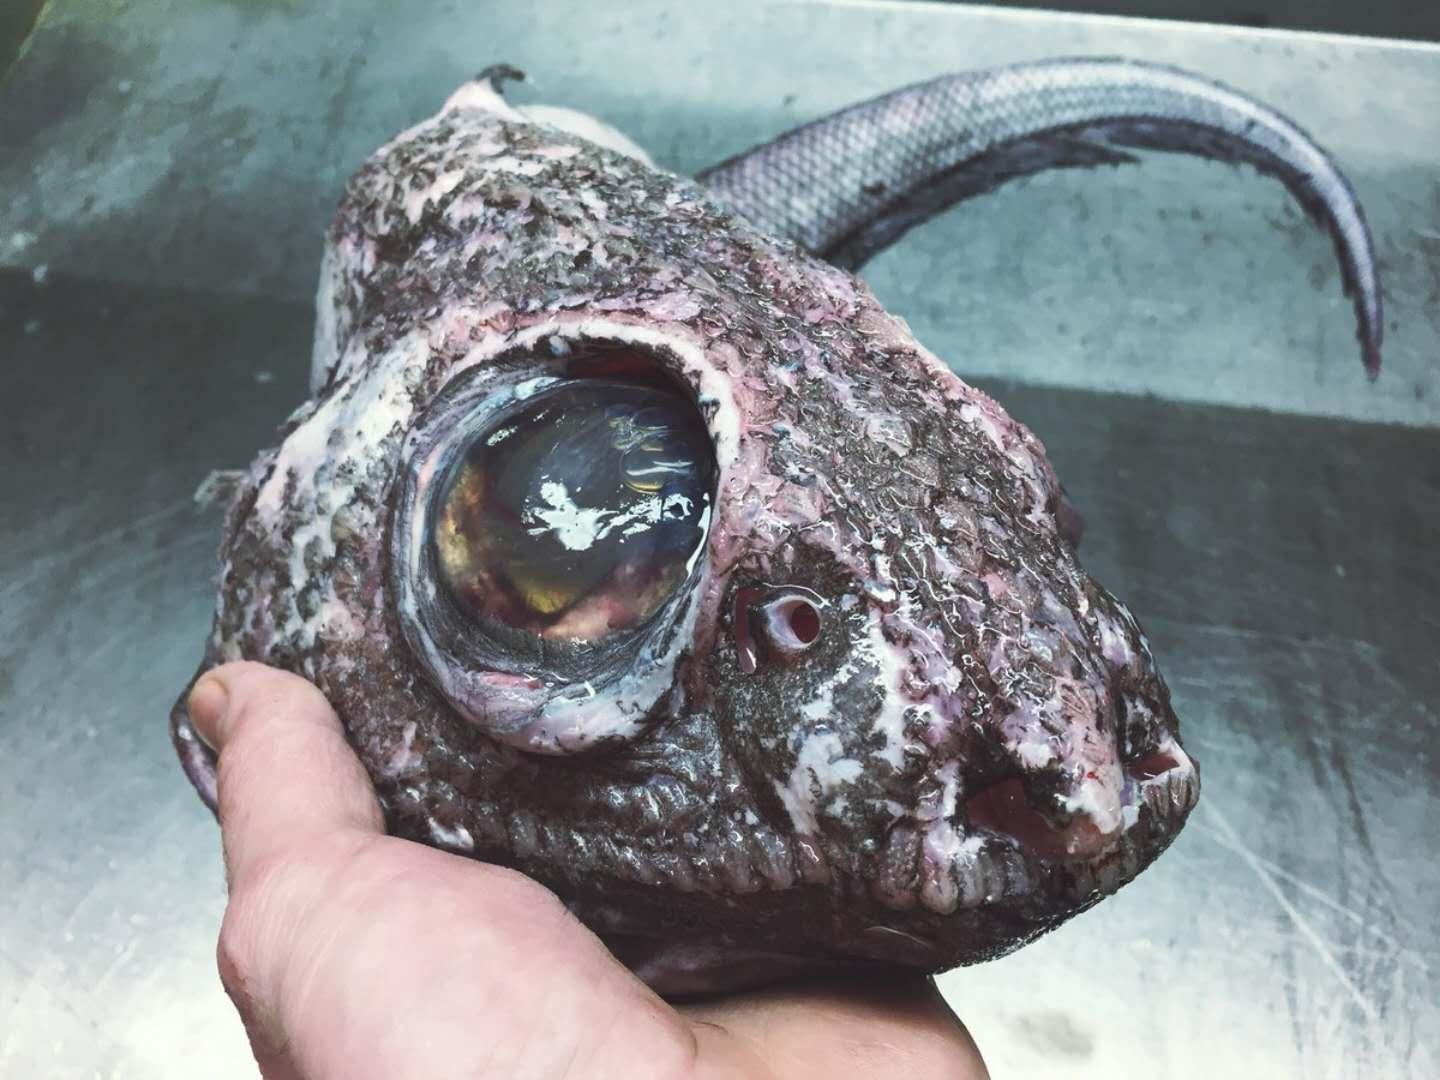 奇形怪状的海鱼图片